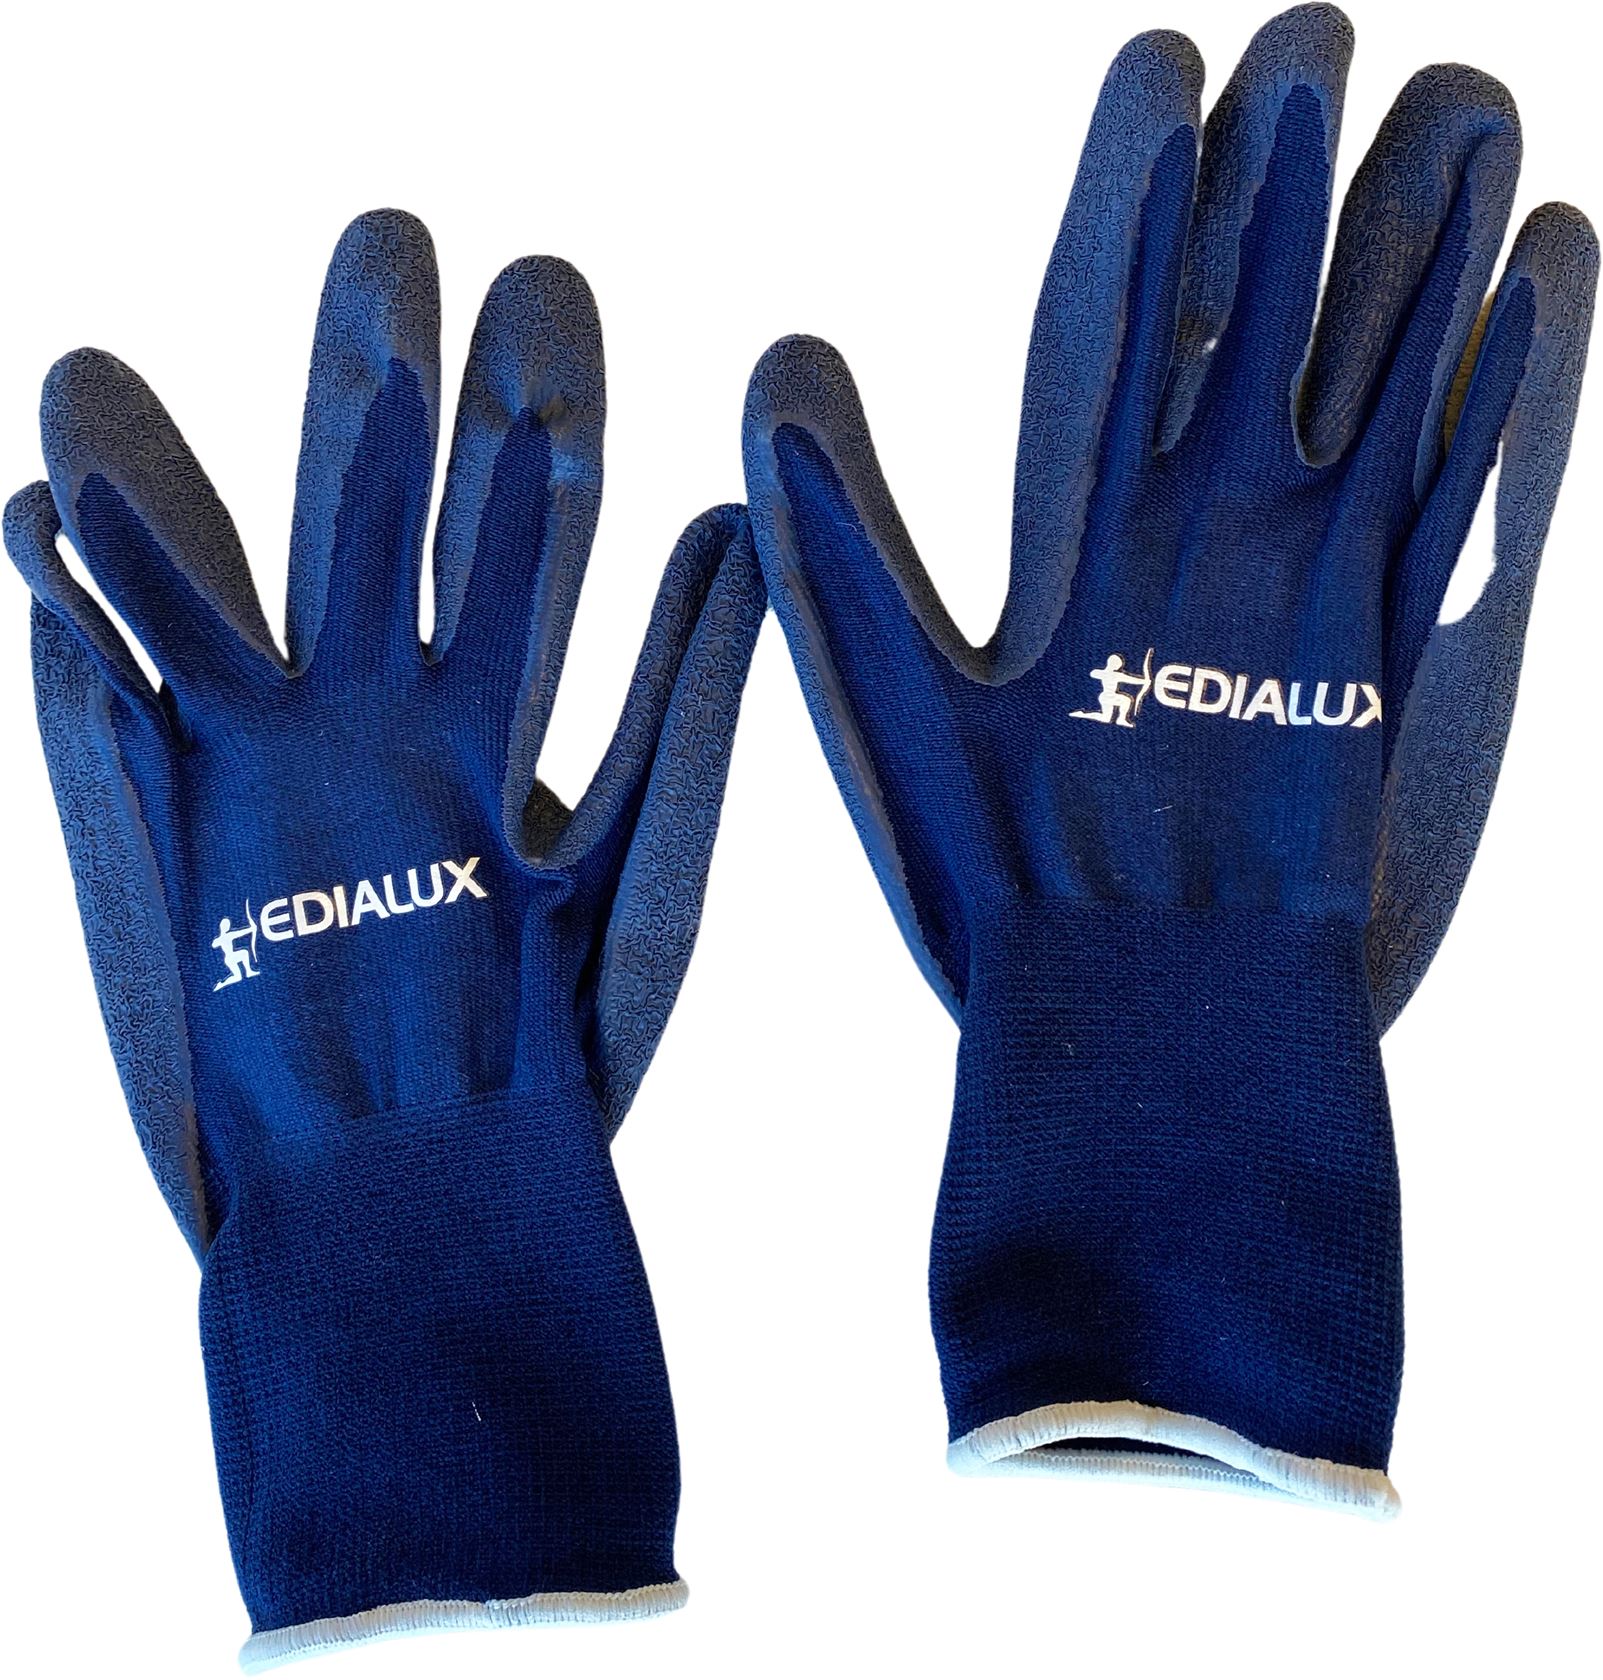 Handschoen-edialux-blauw